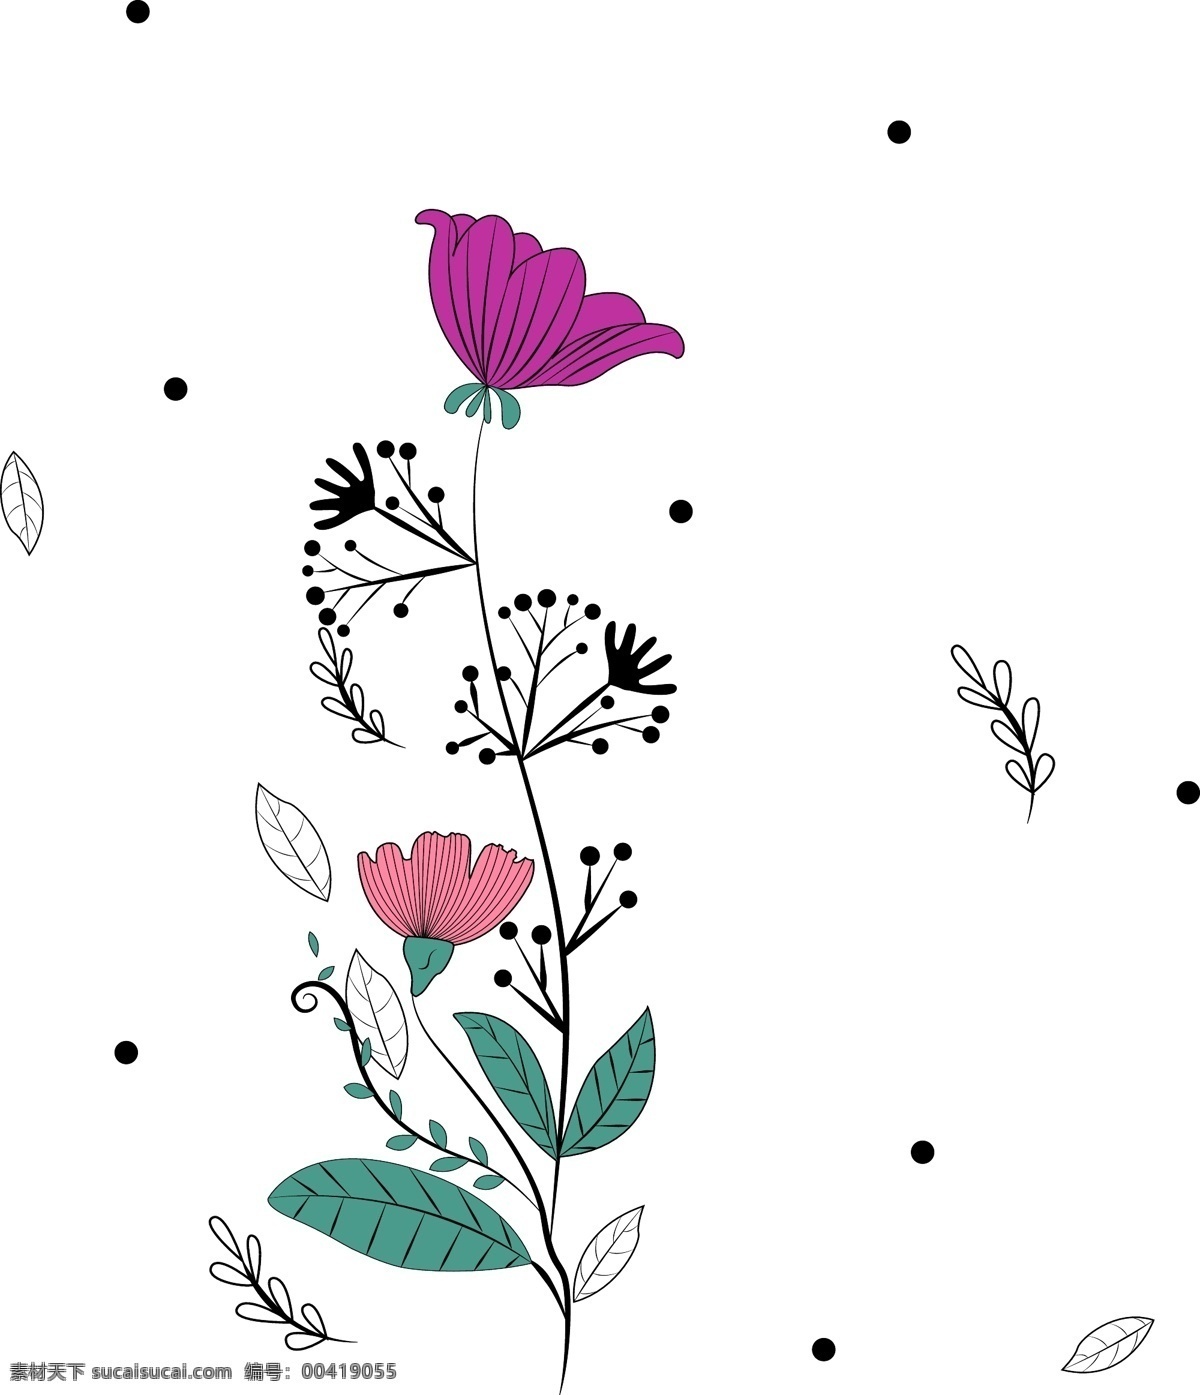 手绘 花 简 笔画 小花 可商用 植物 小清新 手绘花 可爱 简笔画 粉色手绘花